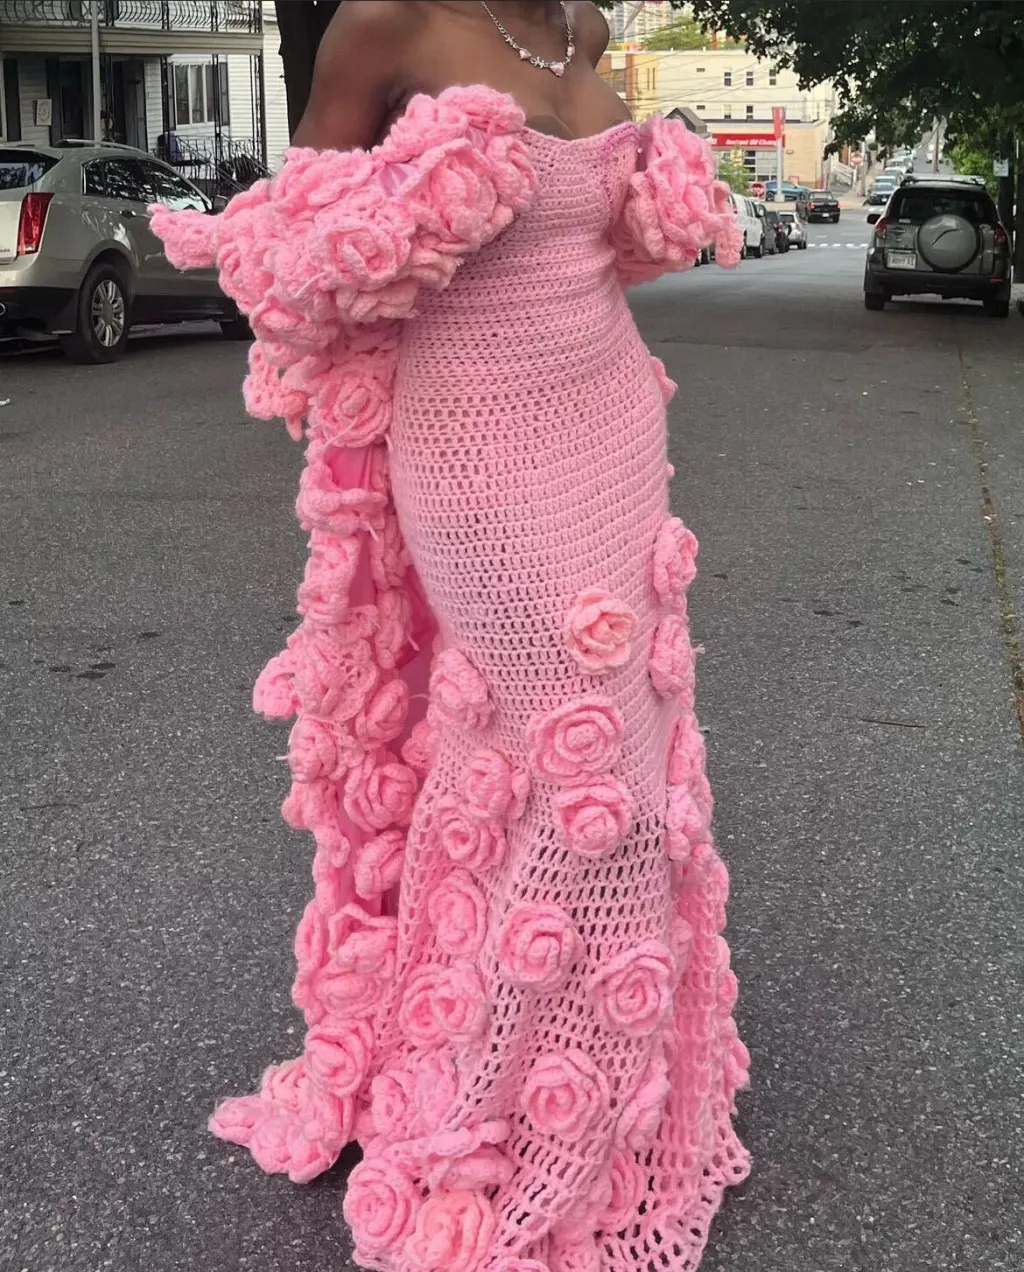 eenager Zendaya-inspired prom dress, teen makes her own prom dress, crochet prom dress, zendaya-inspired prom dress, Sarah Akinbuwa prom dress, Sarah Akinbuwa crochet prom dress, Sarah Akinbuwa Zendaya theGrio.com